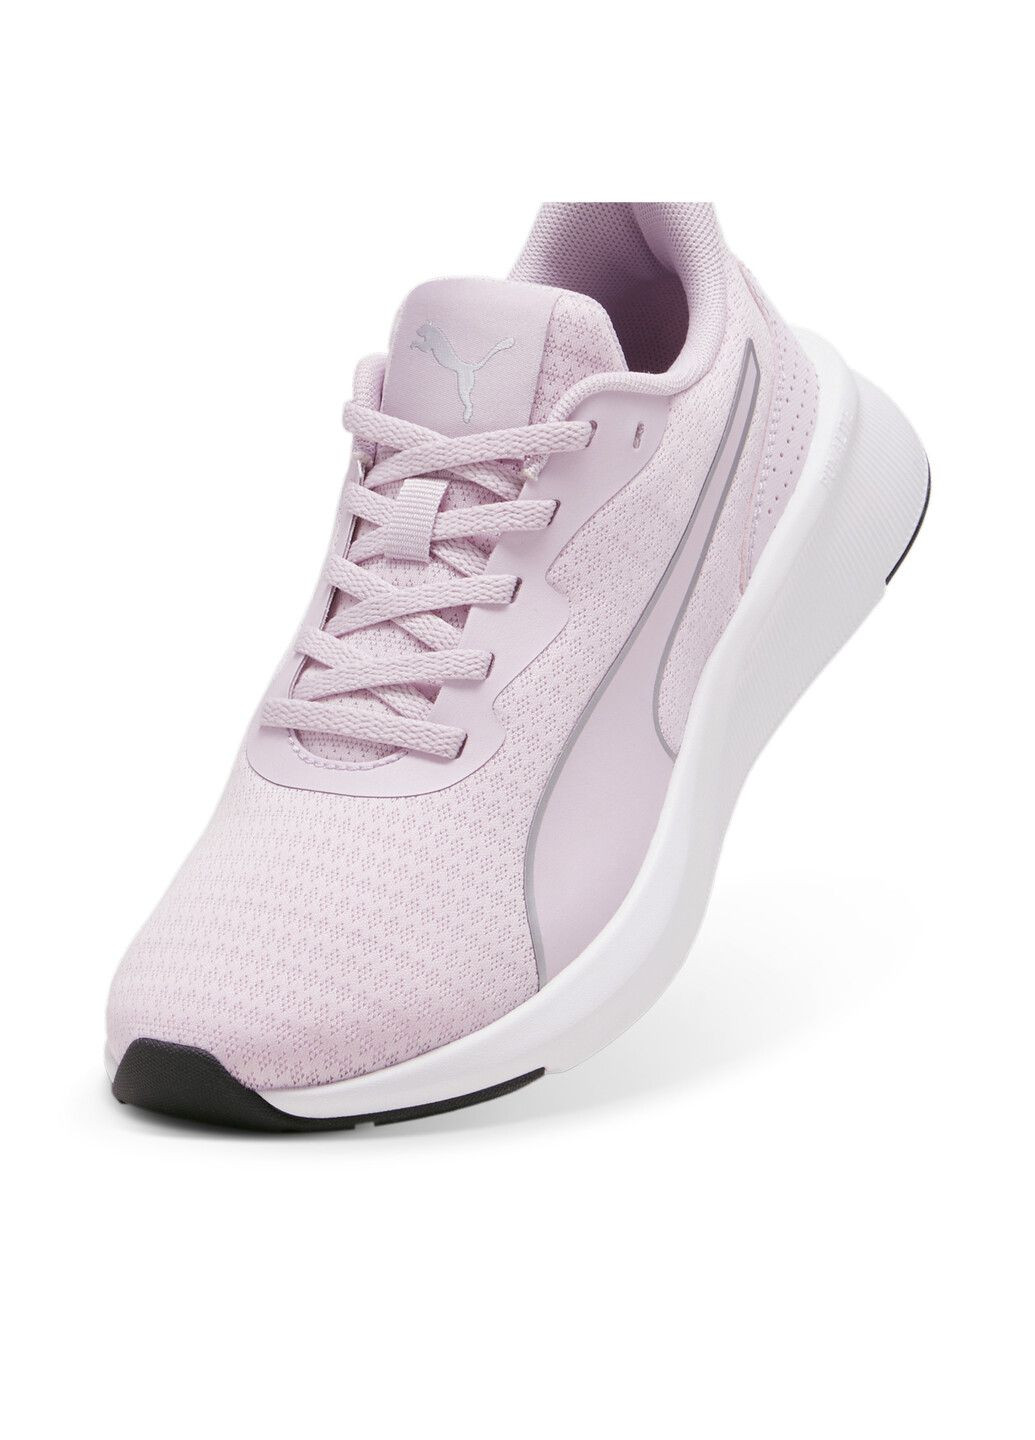 Пурпурные всесезонные кроссовки flyer lite running shoes Puma